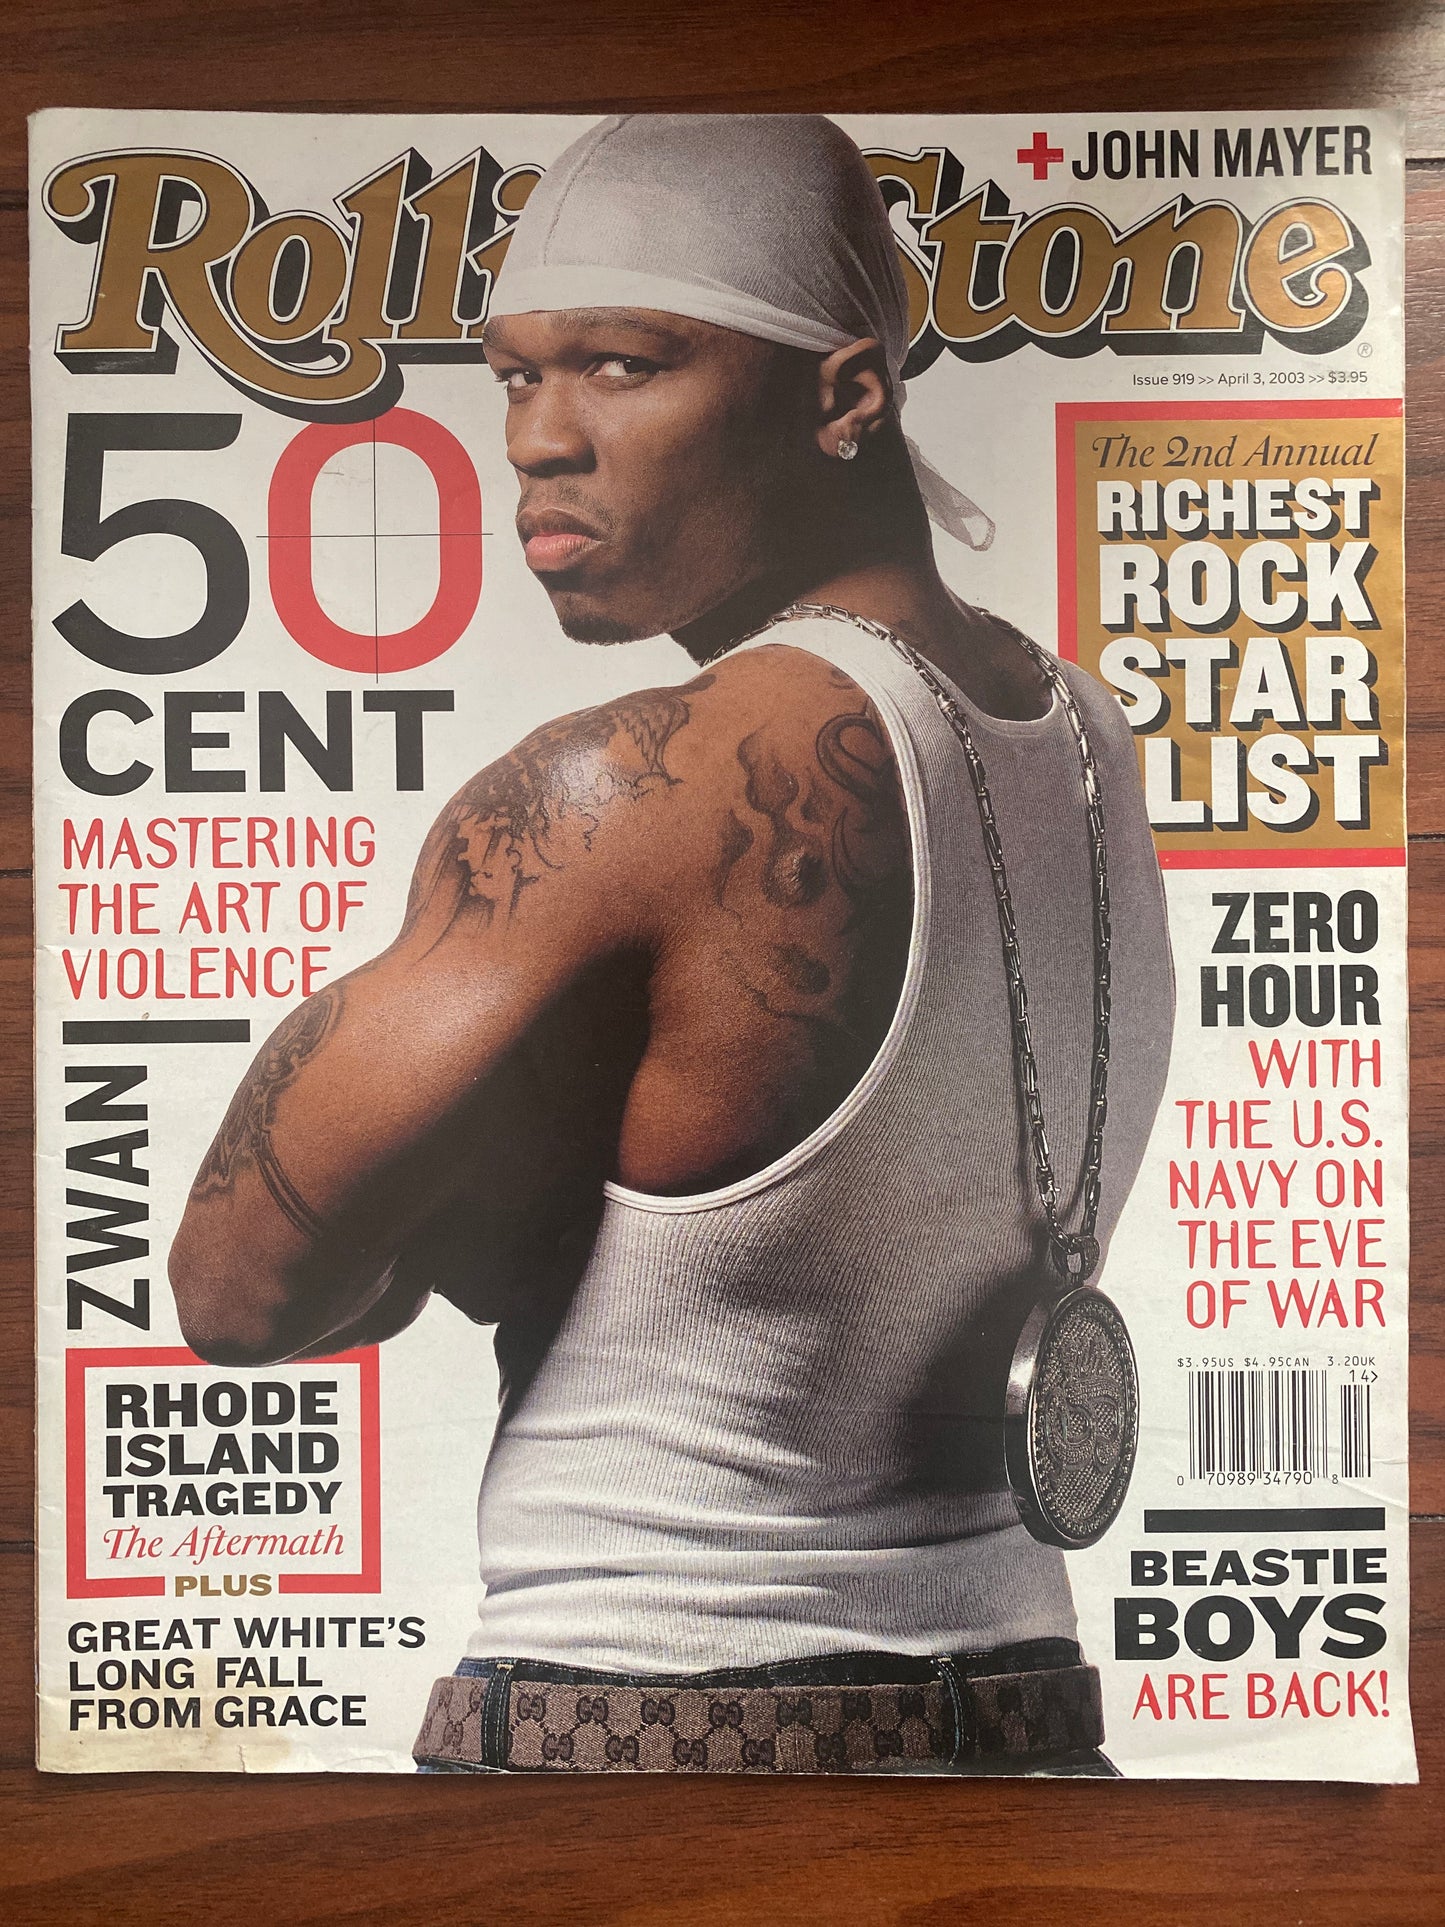 Rolling Stone Magazine April 2003 50 Cent - MoSneaks Shop Online